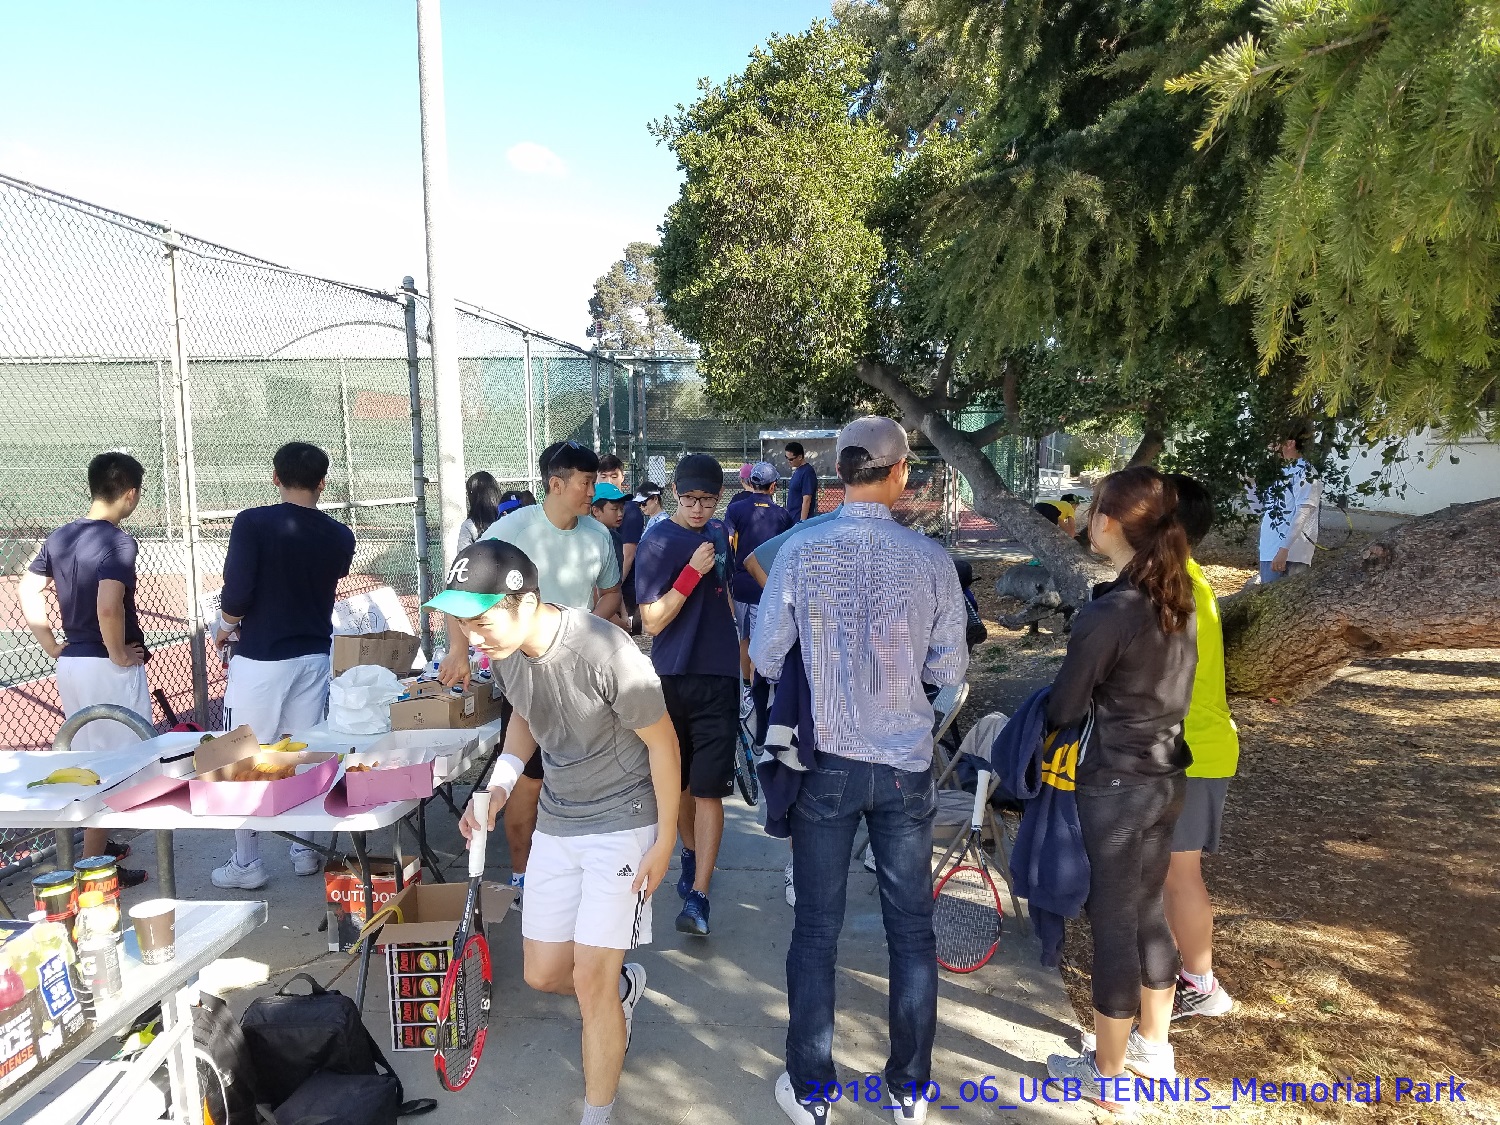 resized_2018_10_06_UCB Tennis at Memorial Park_102212.jpg